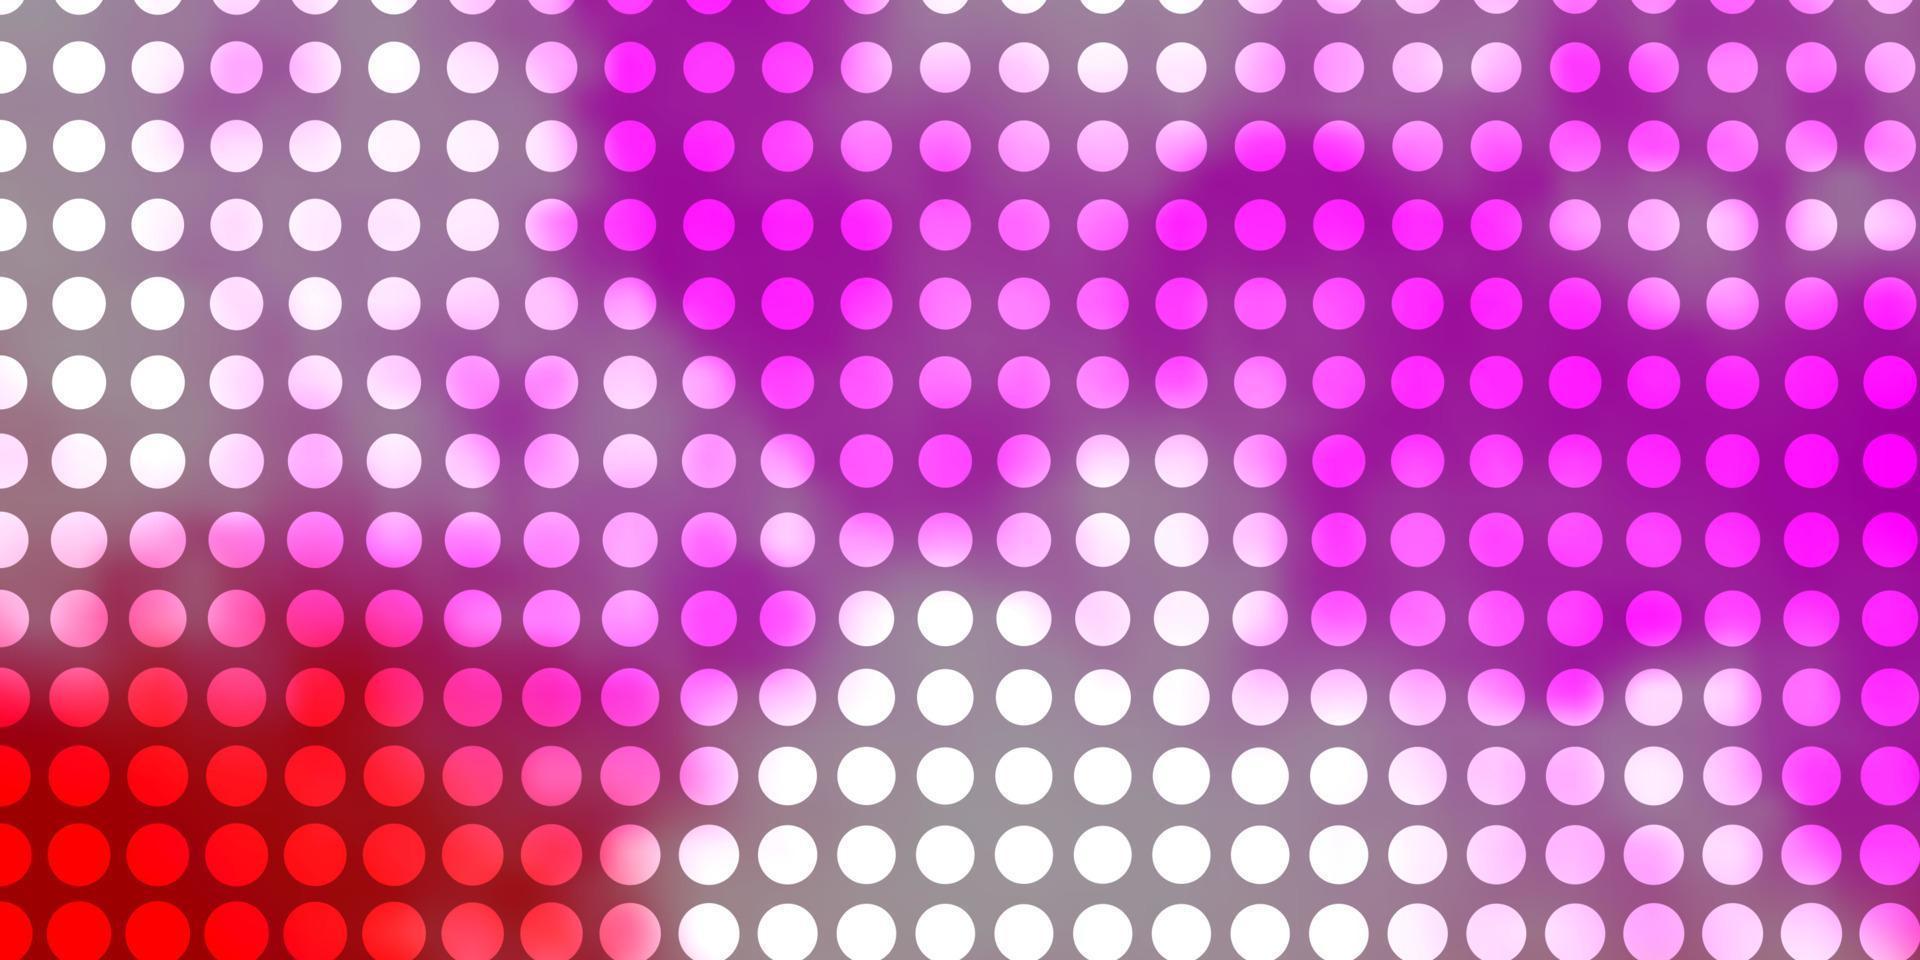 Fondo de vector rosa claro, amarillo con círculos.